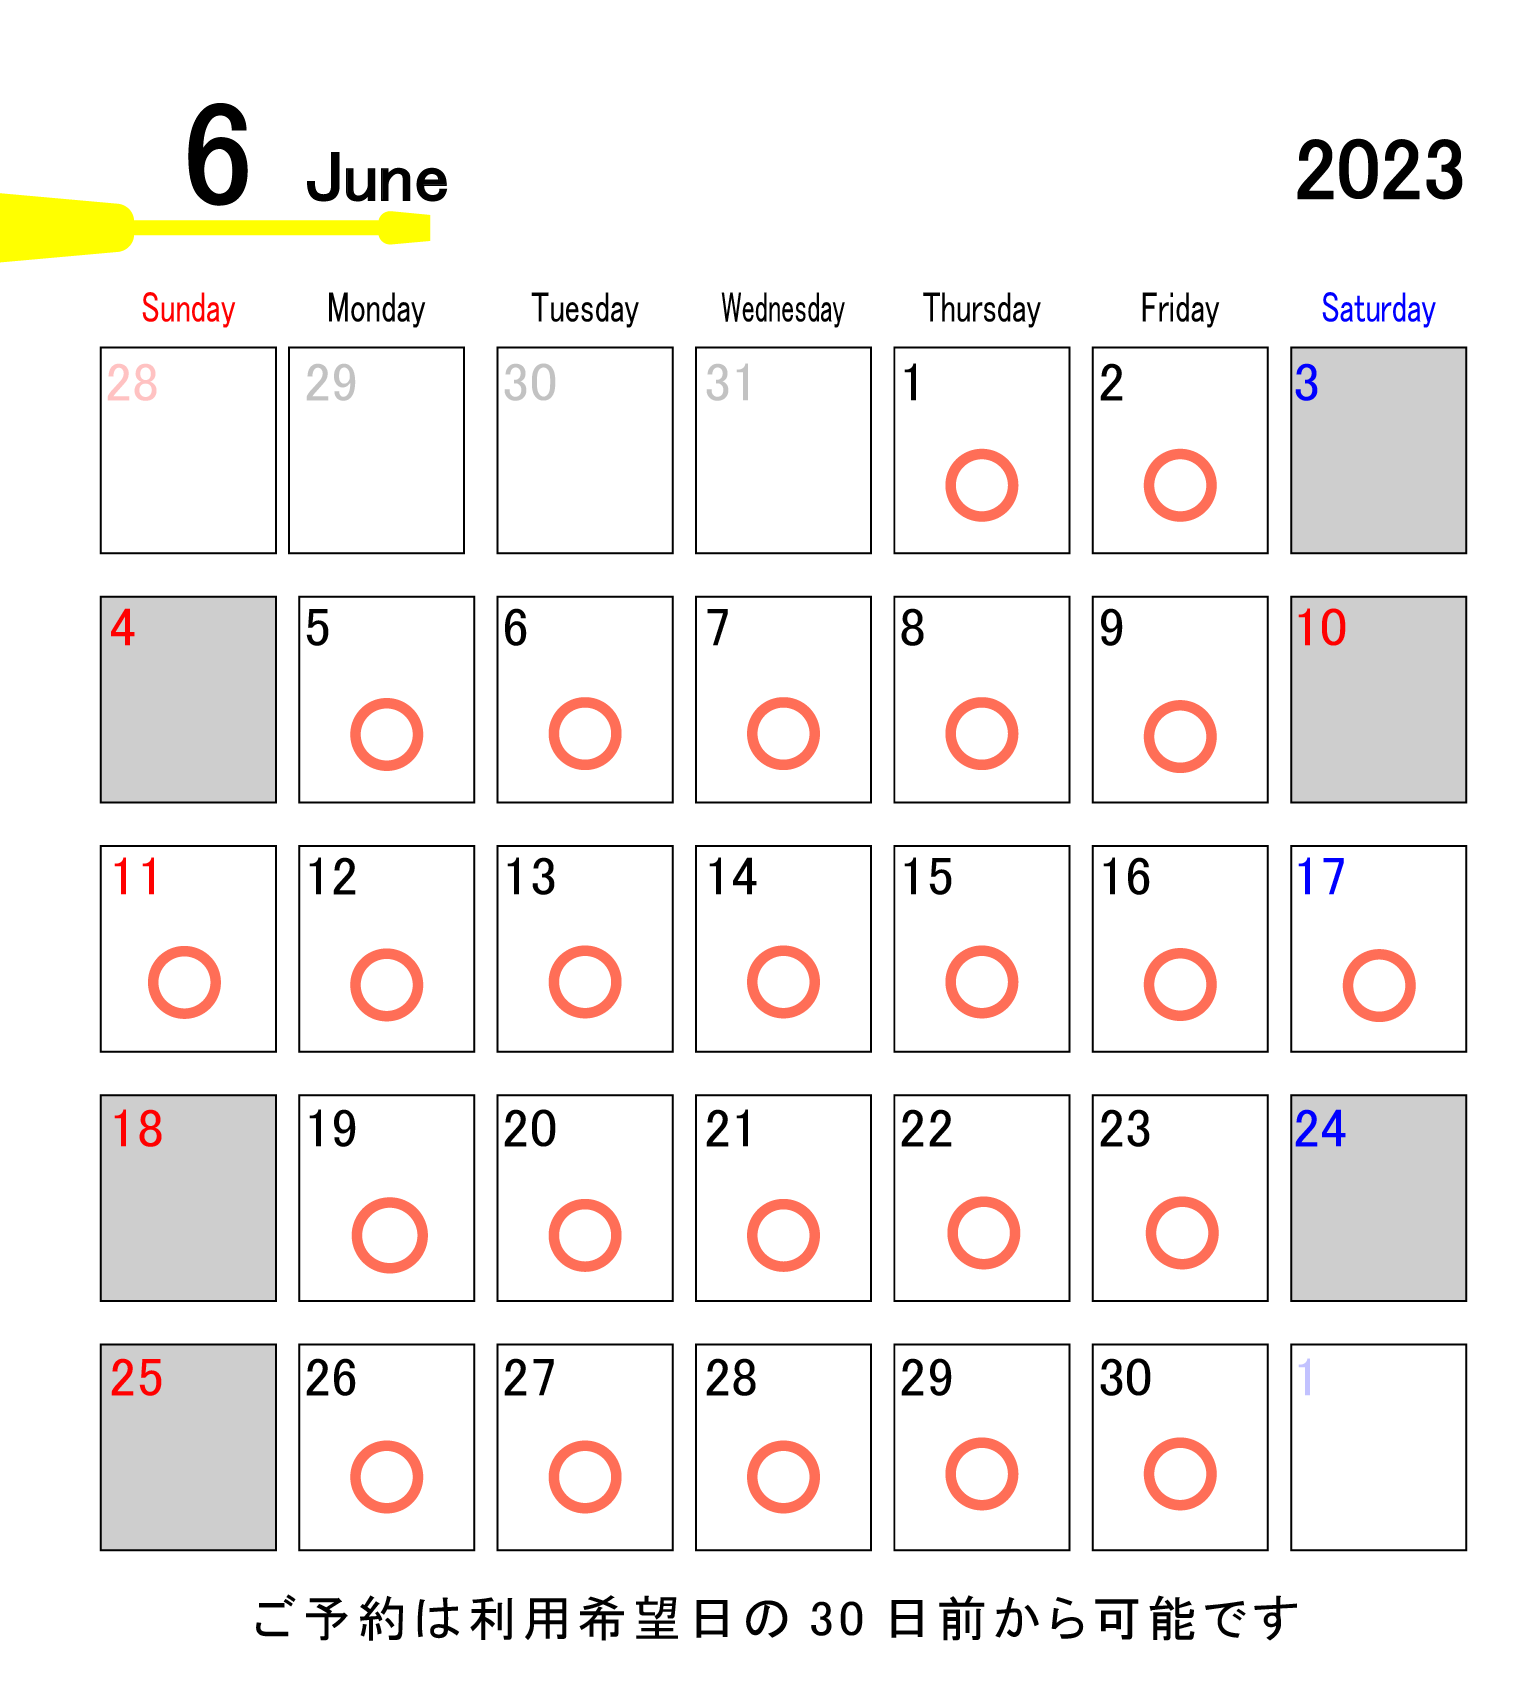 6月の利用可能日は、1、2、5、6、7、8、9、11、12、13、14、15、16、17、19、20、21、22、23、26、27、28、29、30です。